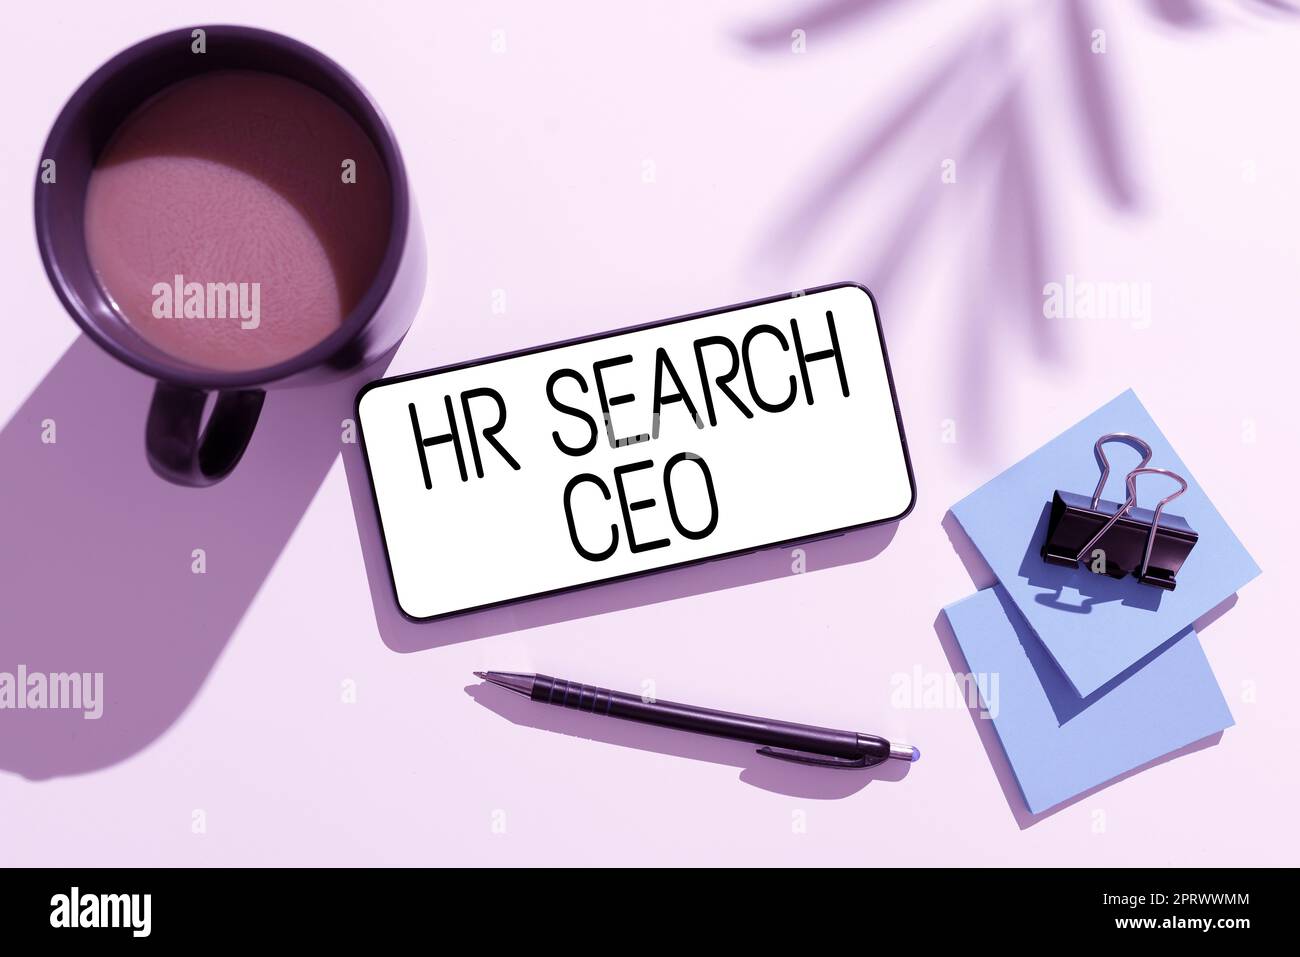 Affiche textuelle montrant le PDG de HR Search. Mot pour les ressources humaines à la recherche d'un nouveau chef de la direction Banque D'Images